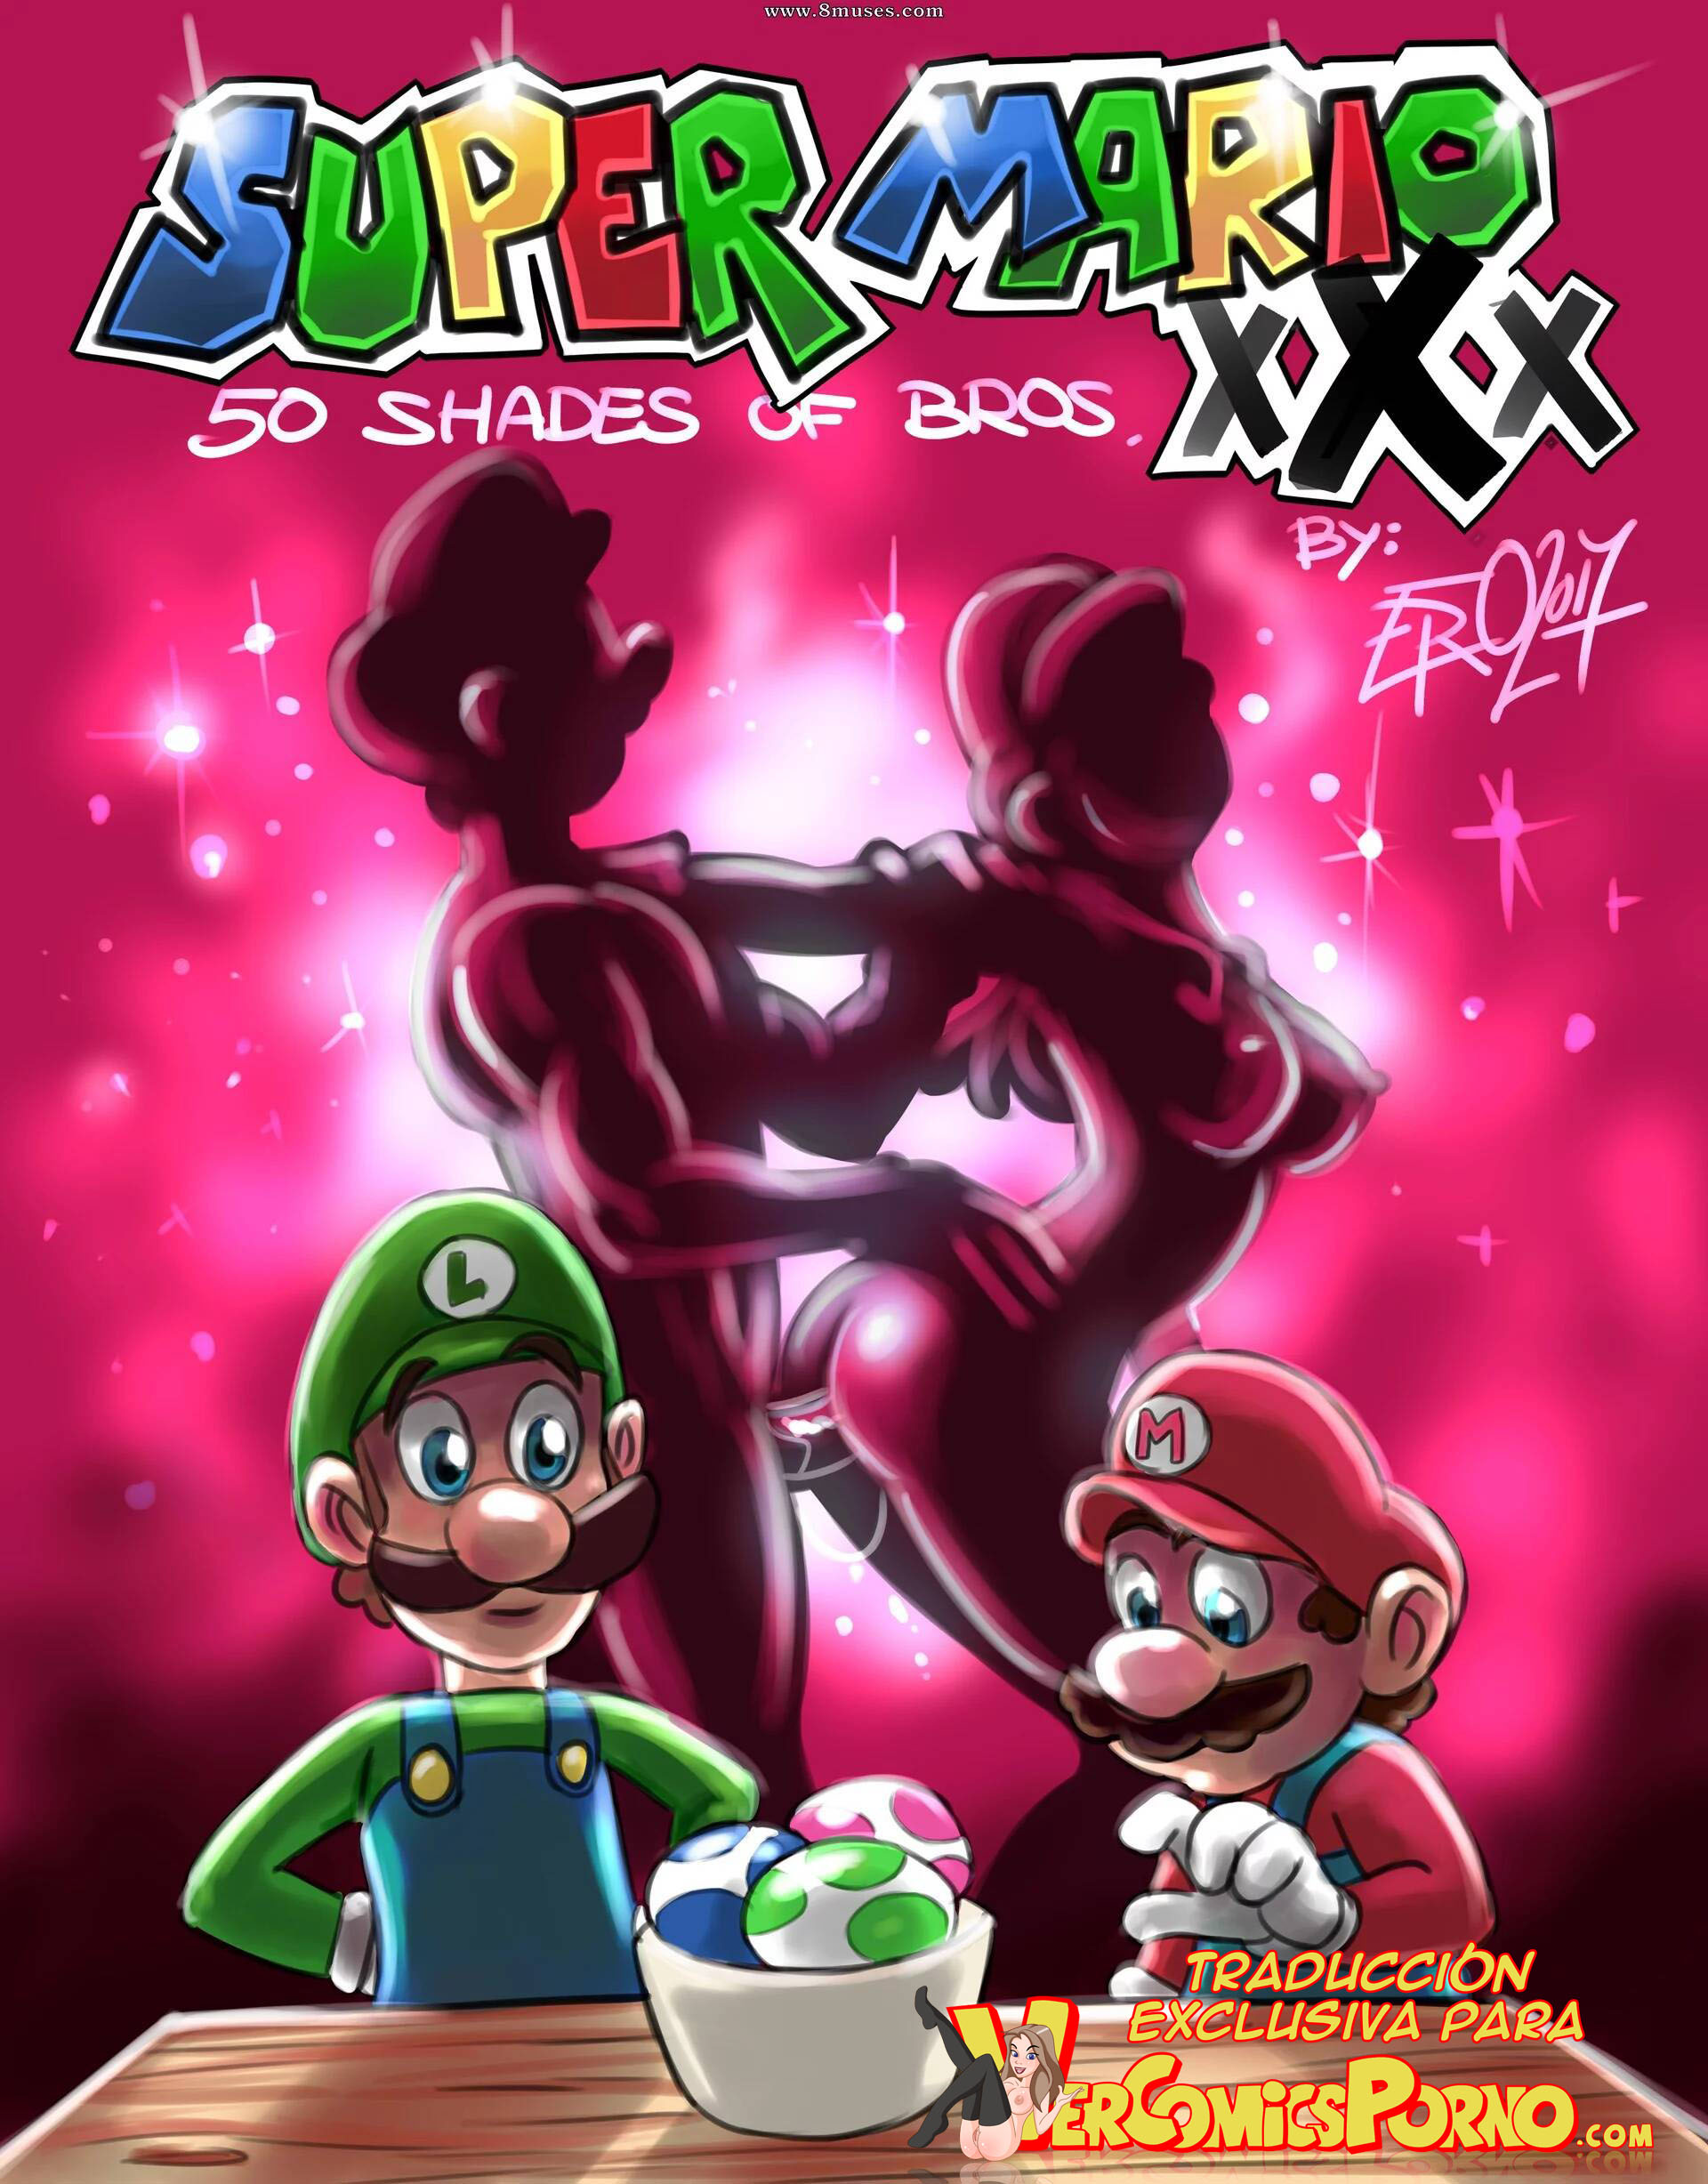 Super Mario xxx follando con Luigi - Vercomicsporno